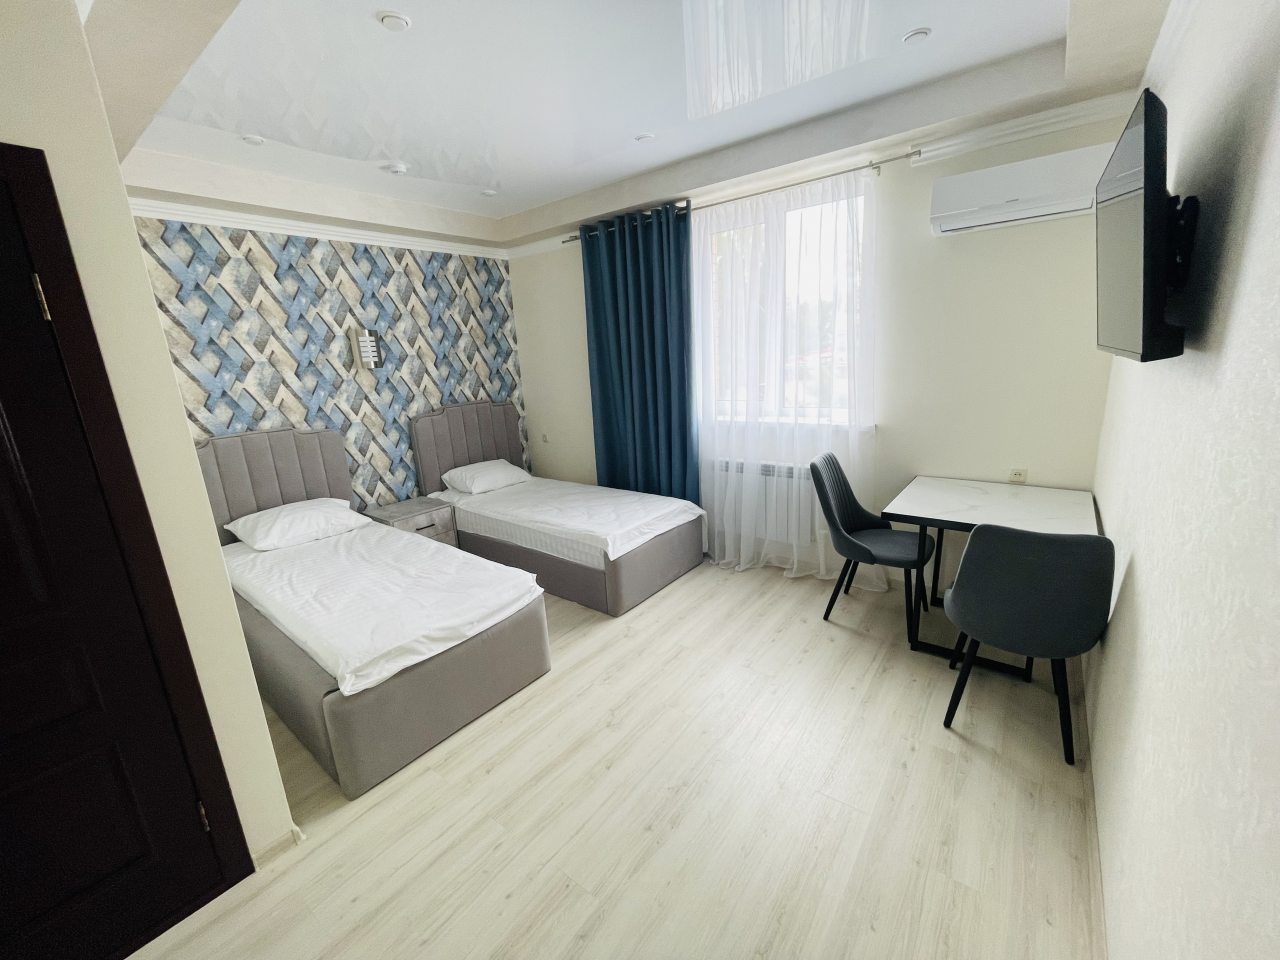 Двухместный (Стандартный номер с 2-мя раздельными кроватями) гостиницы Hotel372, Саратов